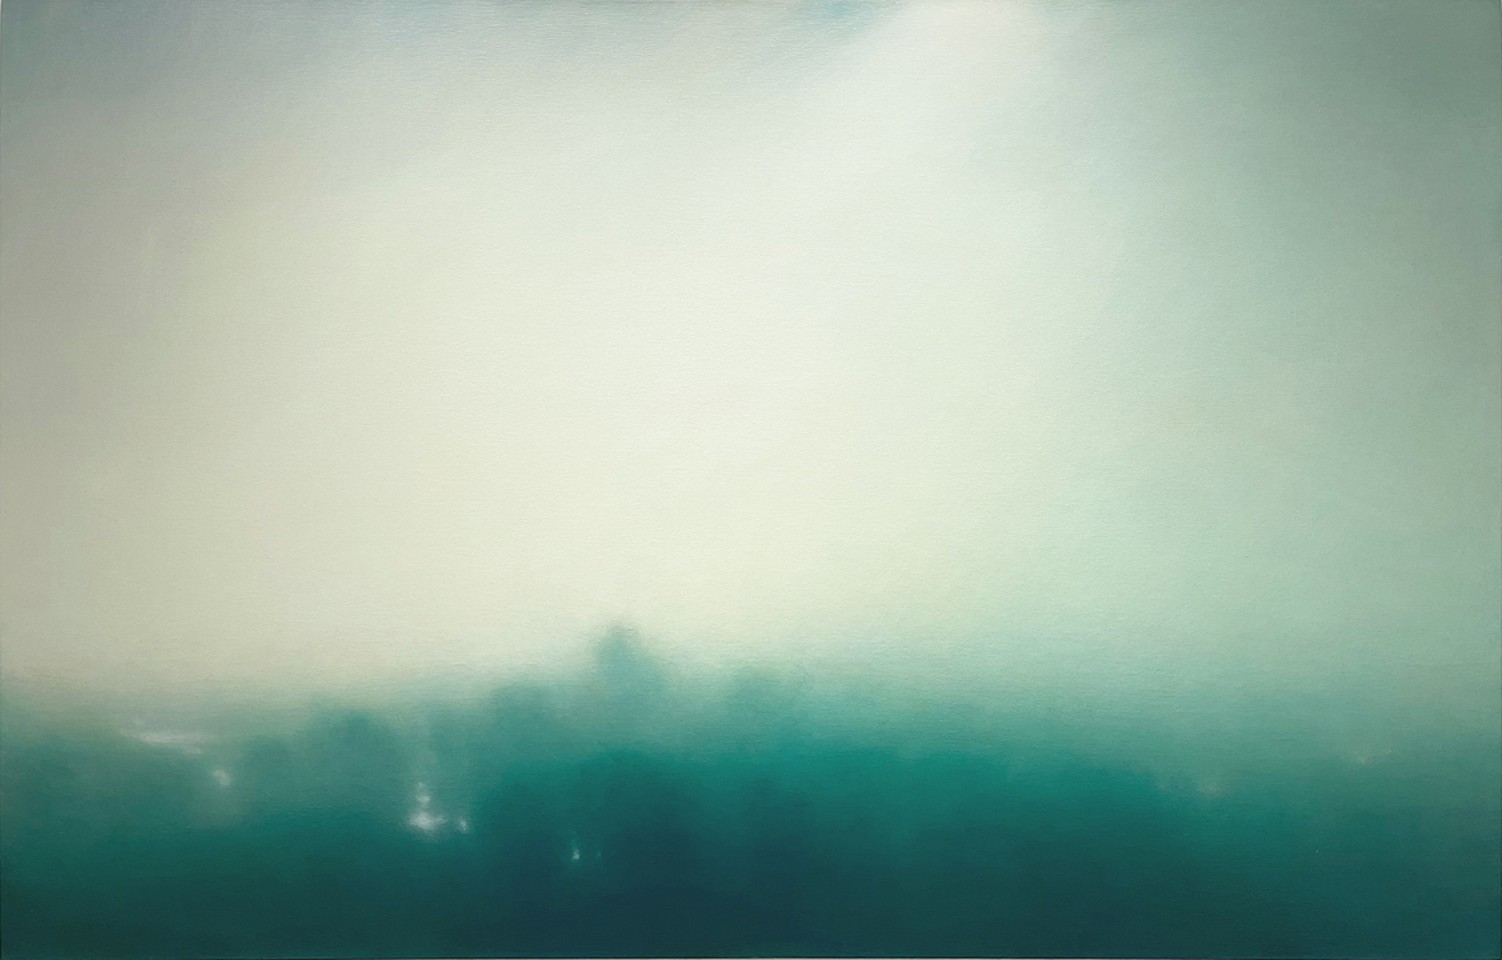 Michael Abrams (LA)
Seven Lakes, 2021
ABR421
oil on canvas, 46 x 72 inches